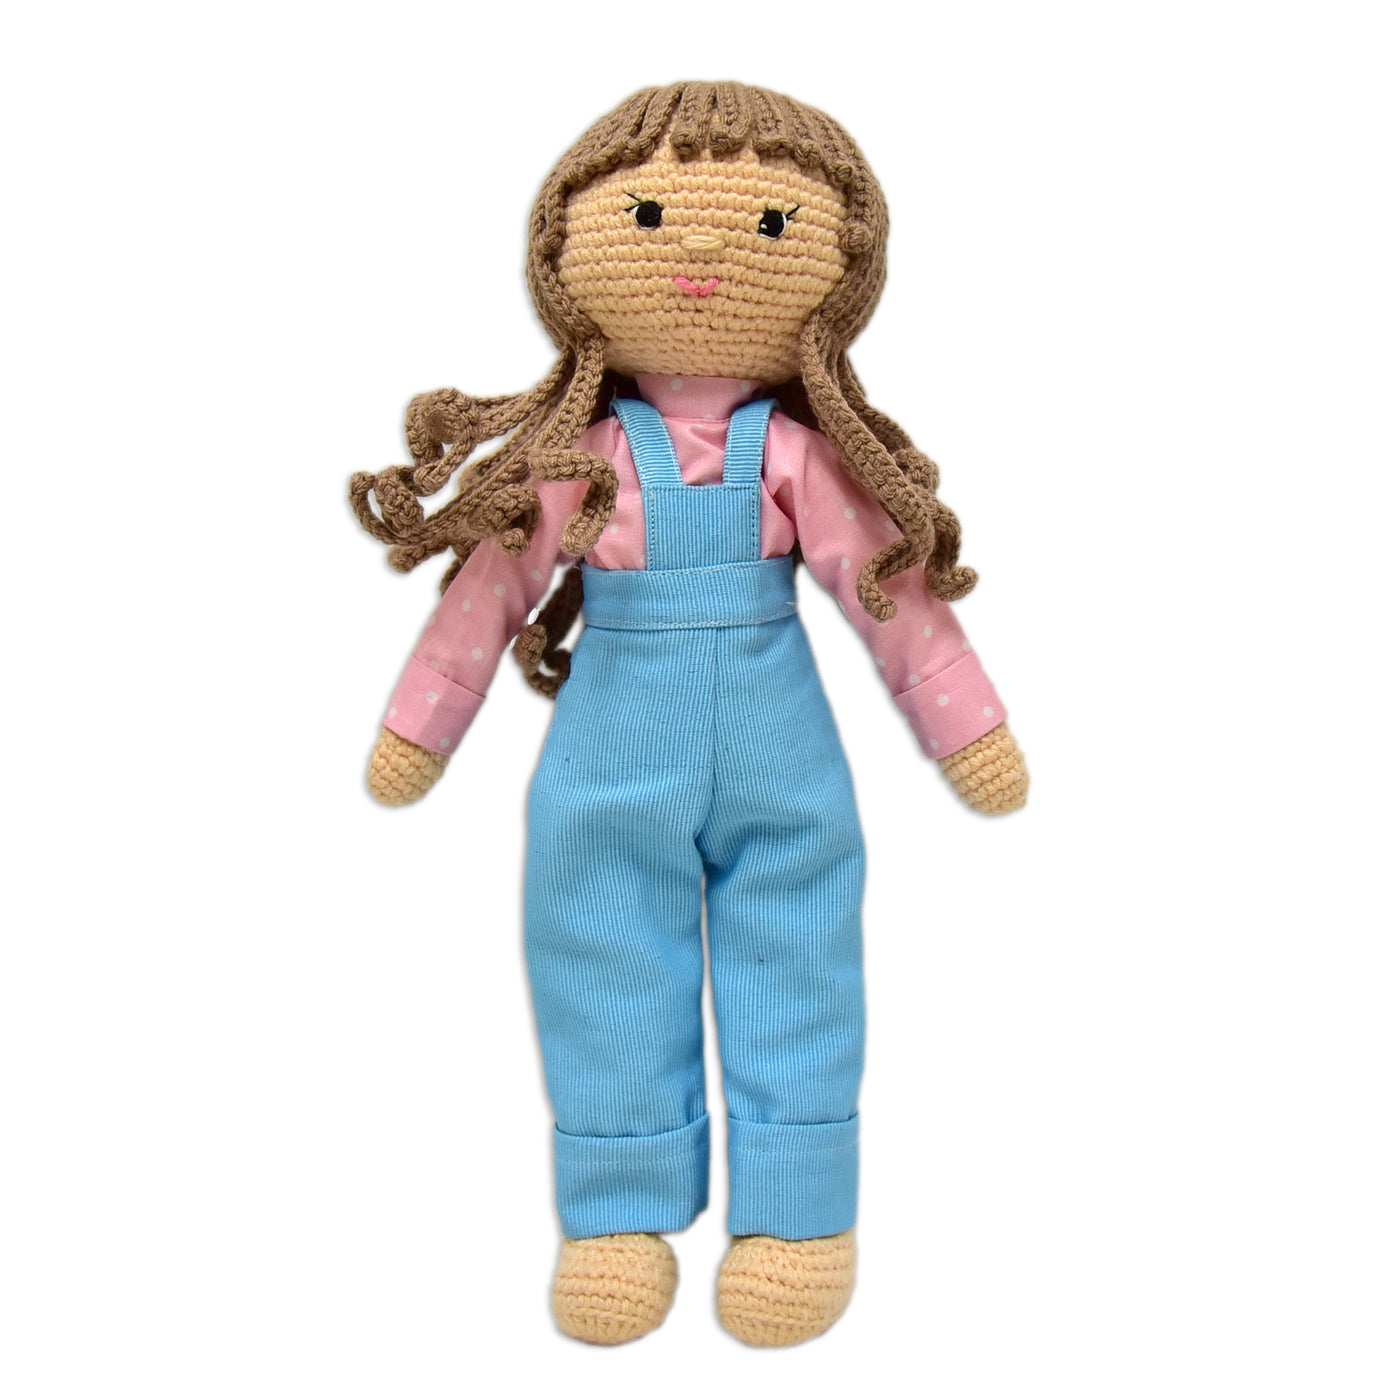 Crrochet Doll for Kids- Twinkle